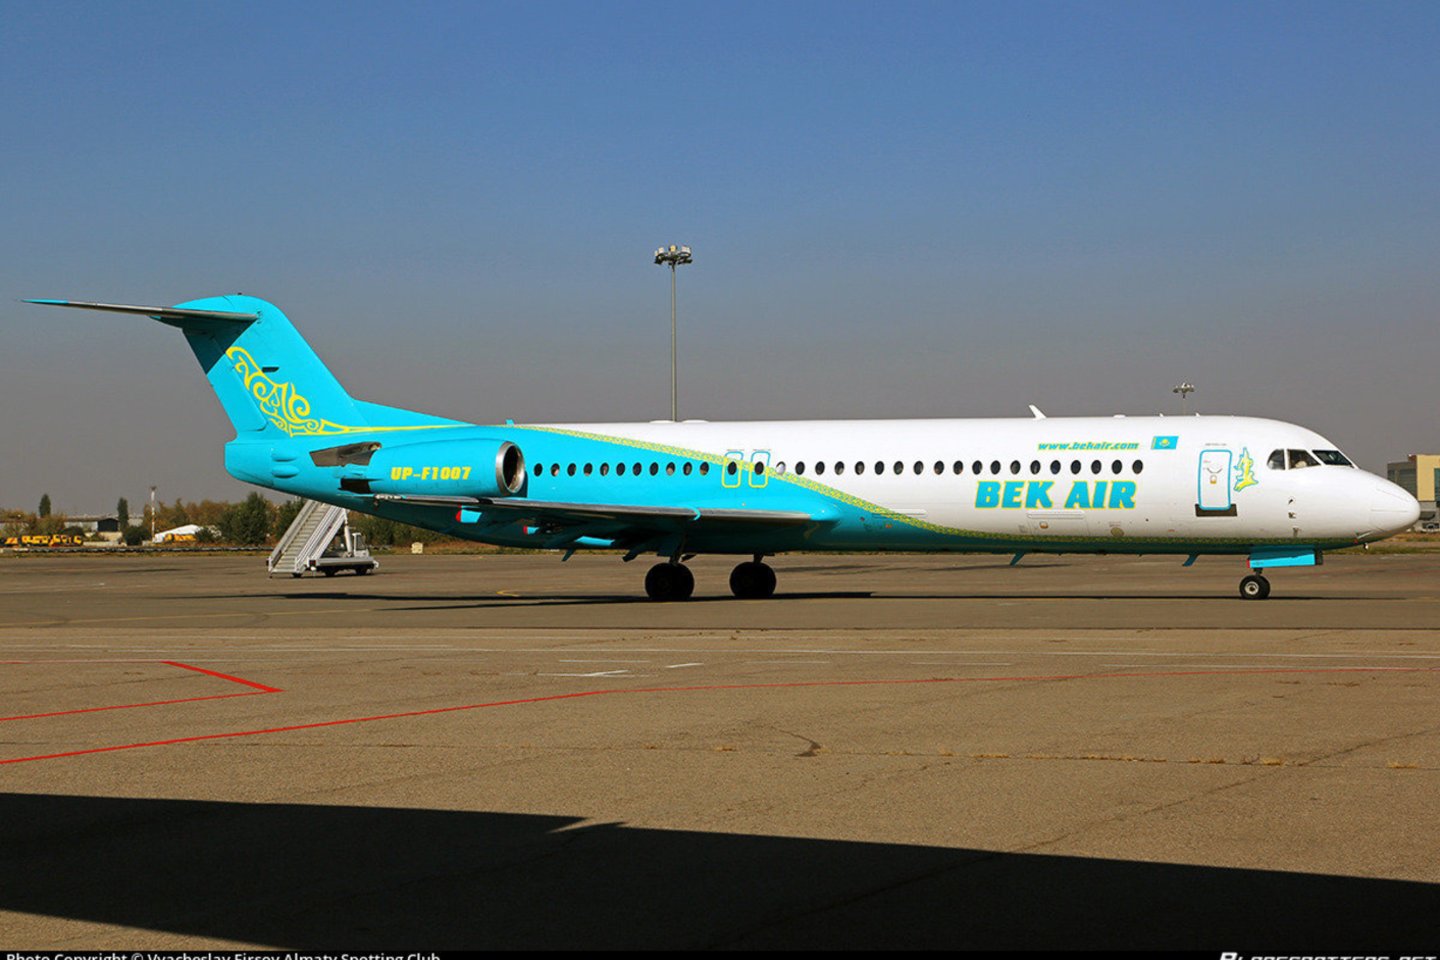 Ankstyvą penktadienio rytą Kazachstane sudužusio oro linijų „Bek Air“ lėktuvo „Fokker 100“ pilotai rengėsi įprastam skrydžiui ir prieš pakylant nefiksavo nieko neįprasto.<br>planespotters.net